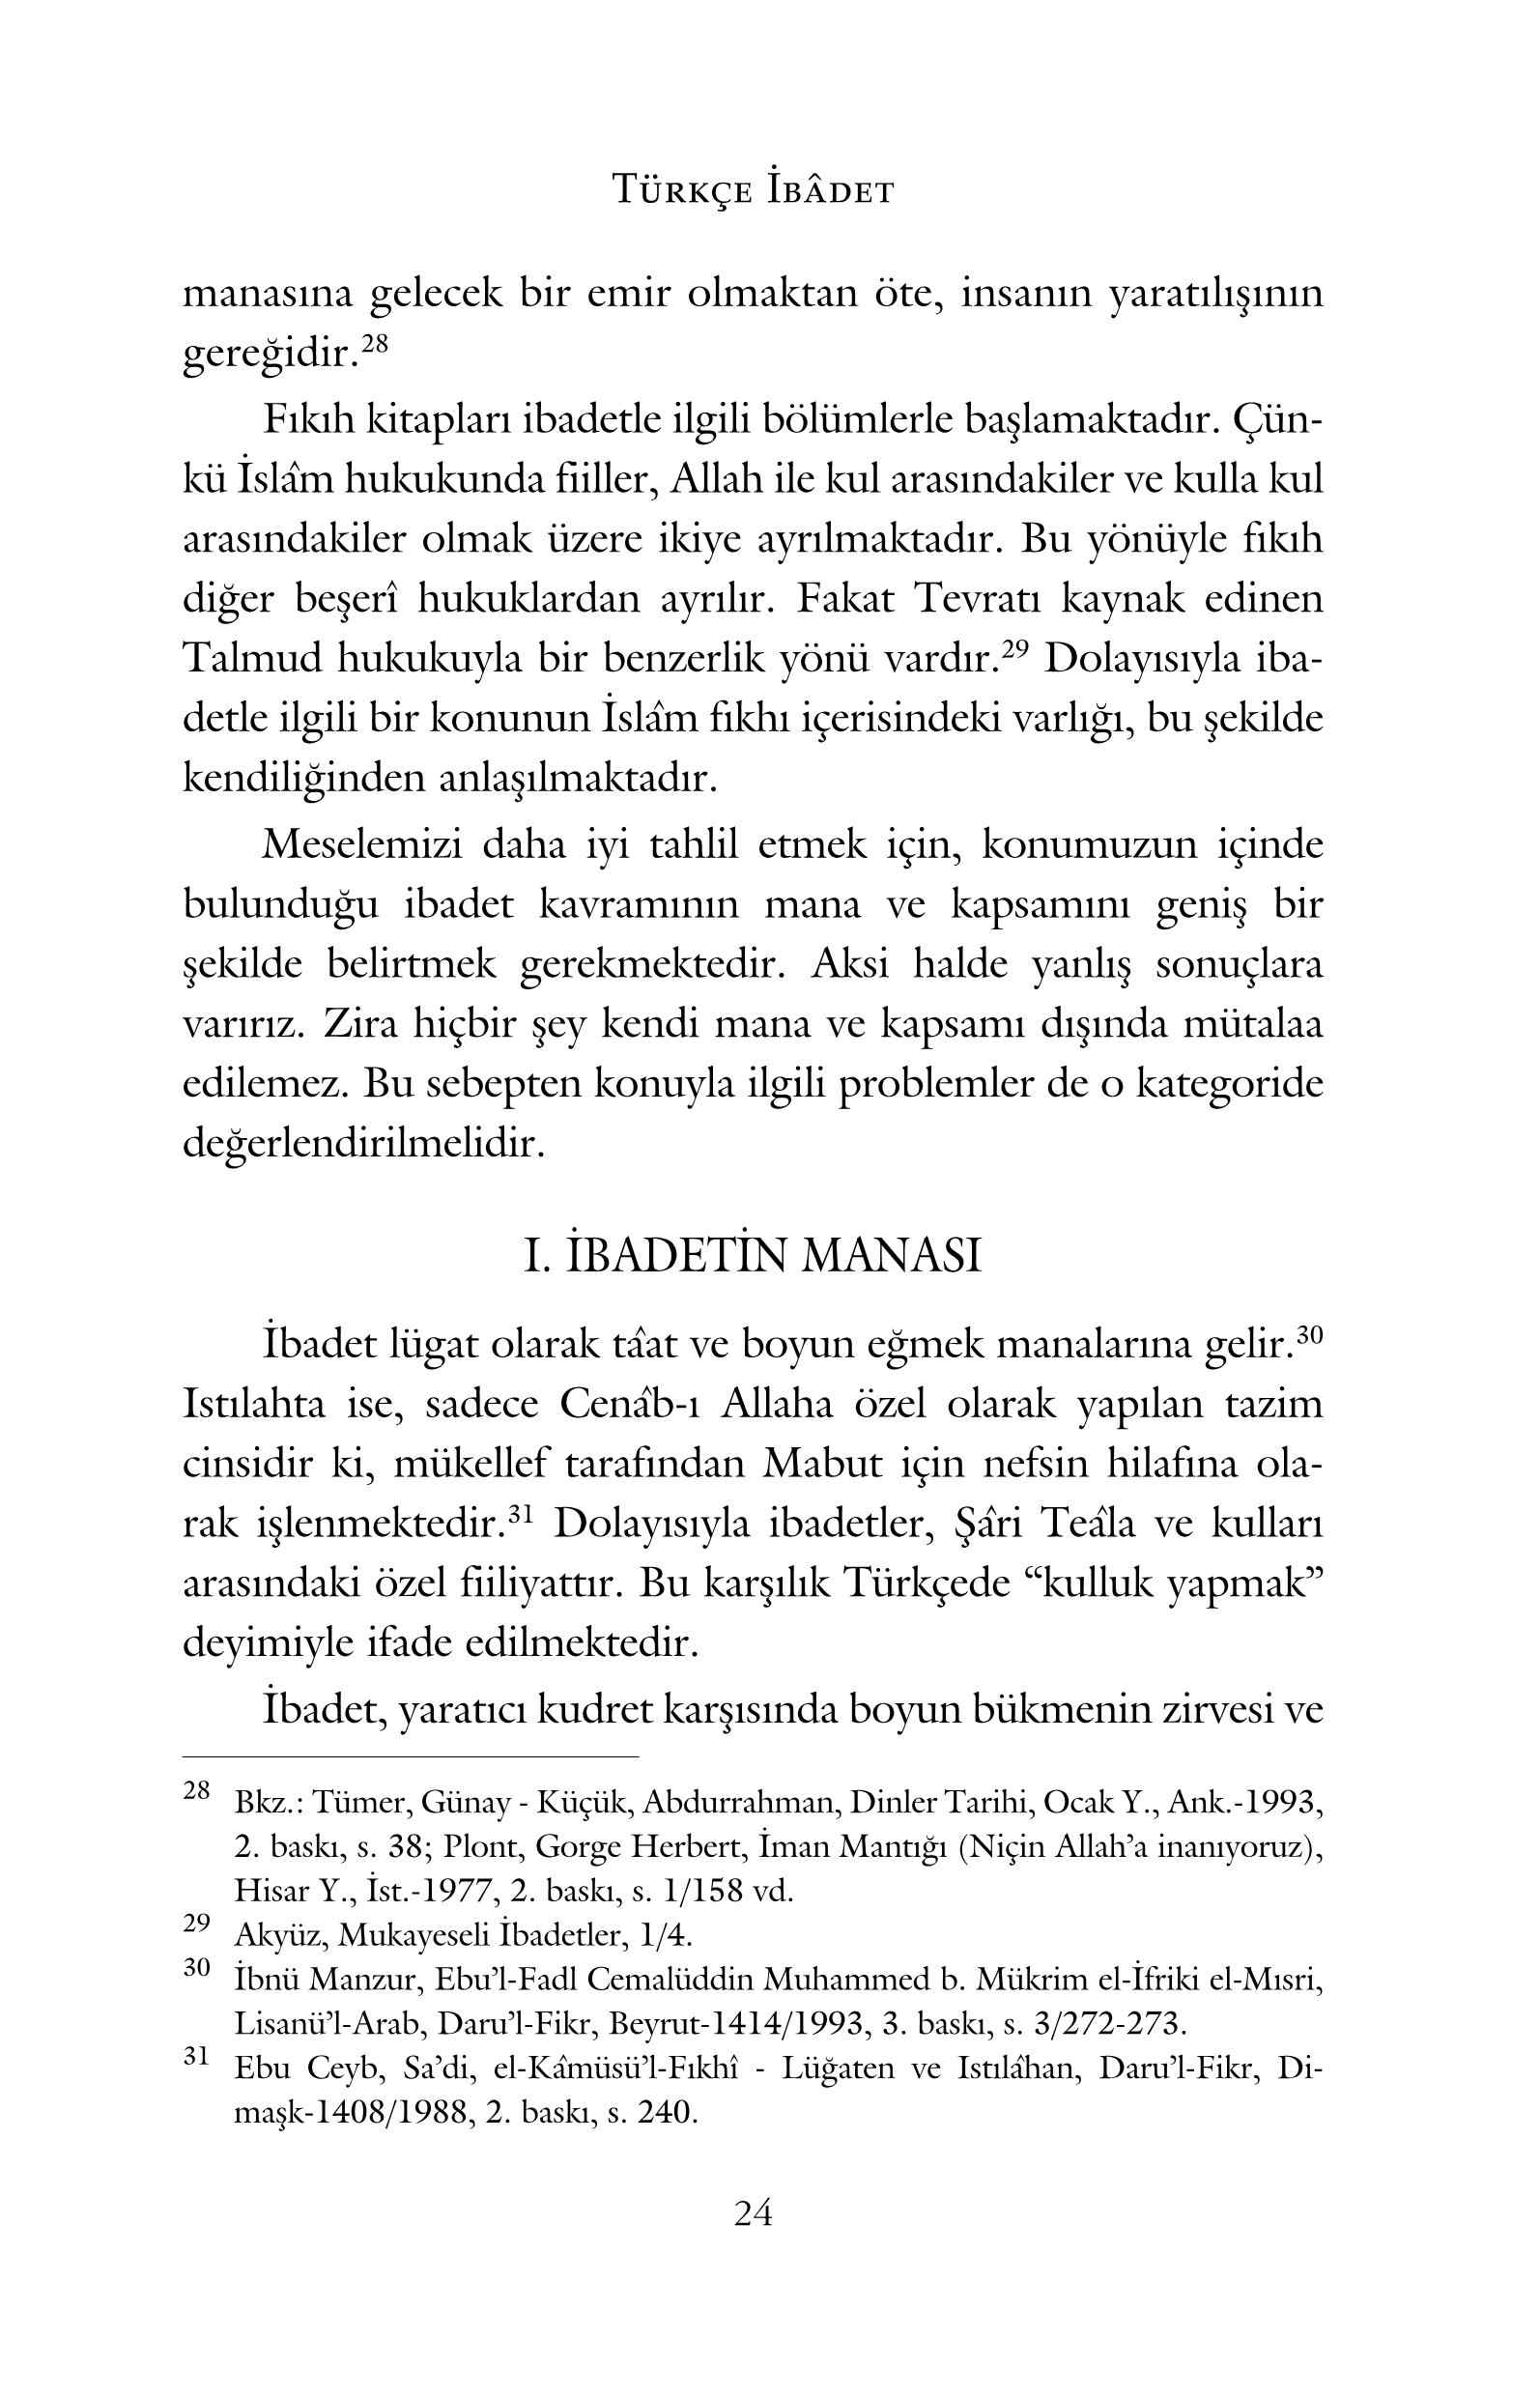 Ismail Koksal - Fıkhî AcidanTürkce Ibadet - IsikAkademiY.pdf, 121-Sayfa 